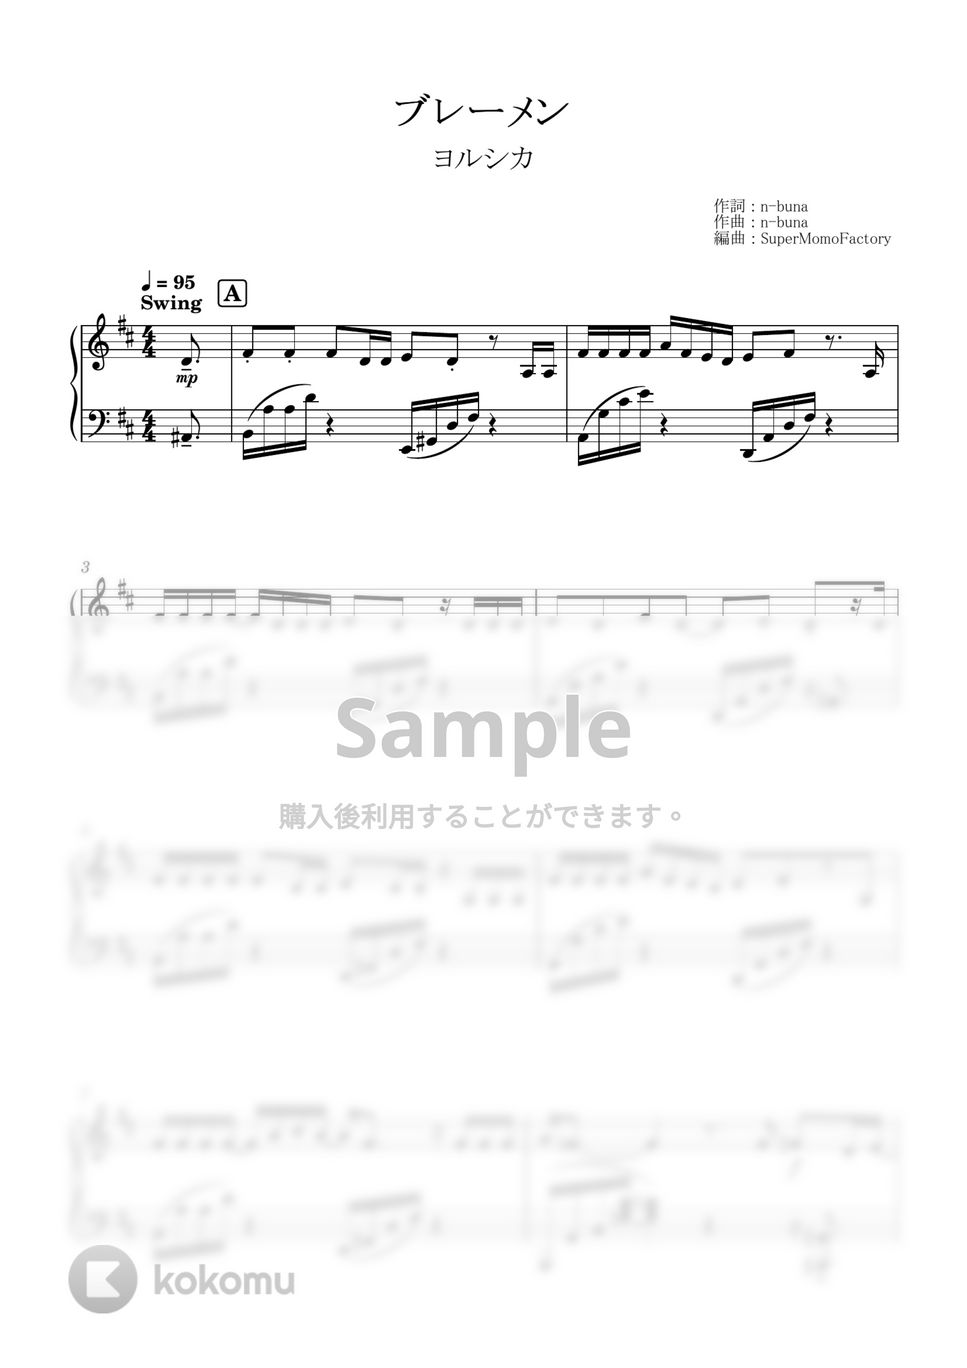 ヨルシカ - ブレーメン (ピアノソロ / 上級) by SuperMomoFactory